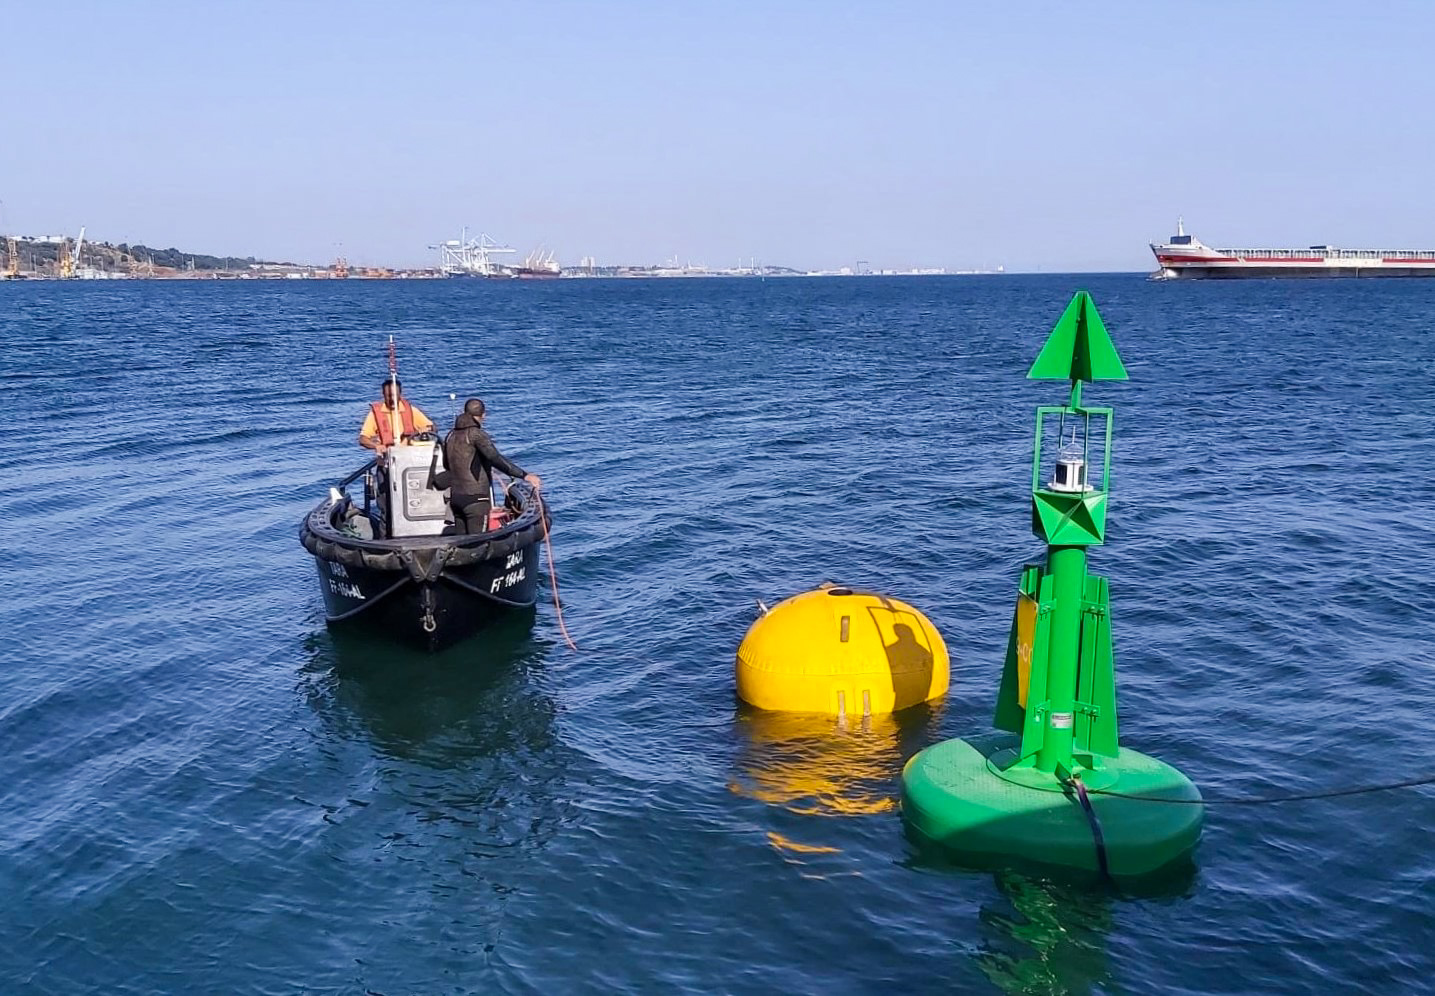 El Grupo Lindley ha suministrado flotadores rotomoldeados de polietileno de la gama Balizamar, con sus respectivas linternas autónomas marítimas y amarres.